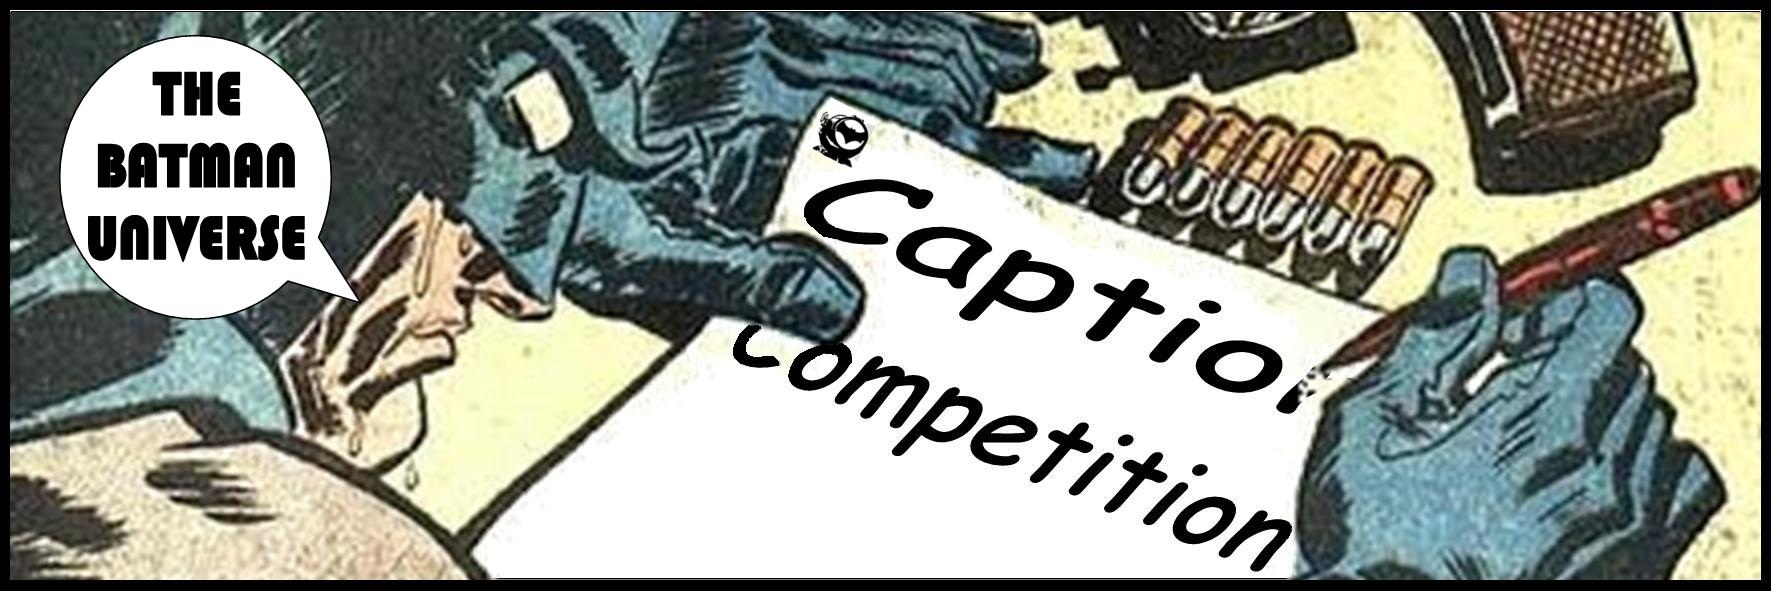 TBU Caption Competition